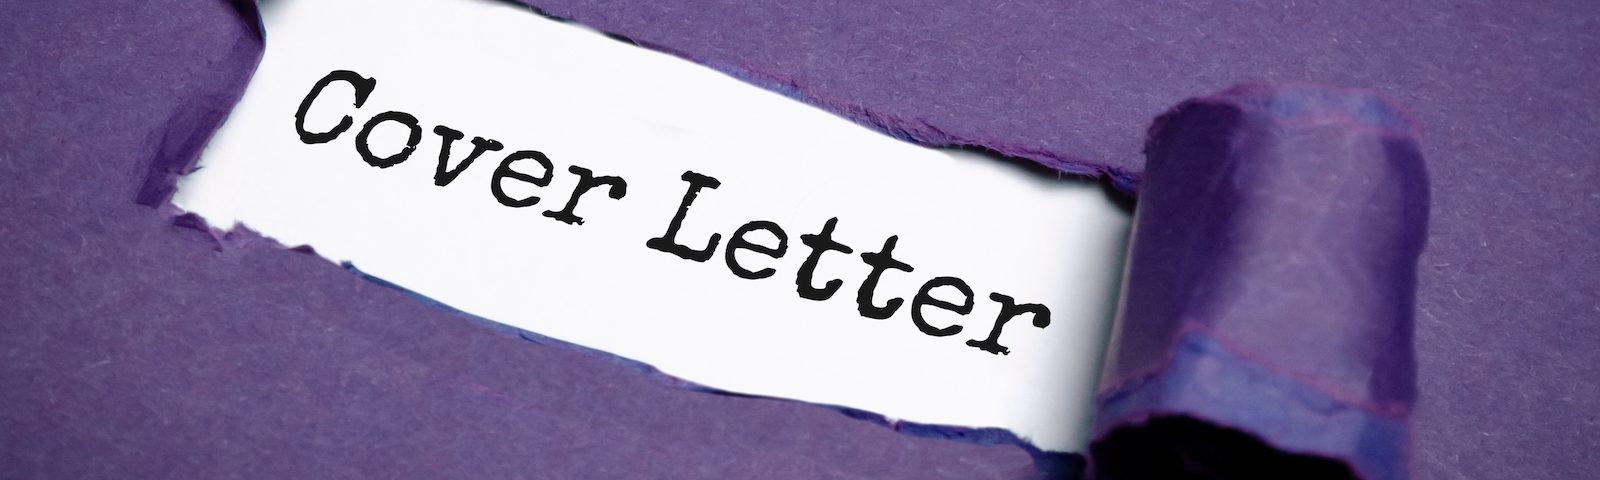 Vos lettres de motivation pourraient-elles causer un chaos professionnel ?  Rédigez correctement vos lettres de motivation